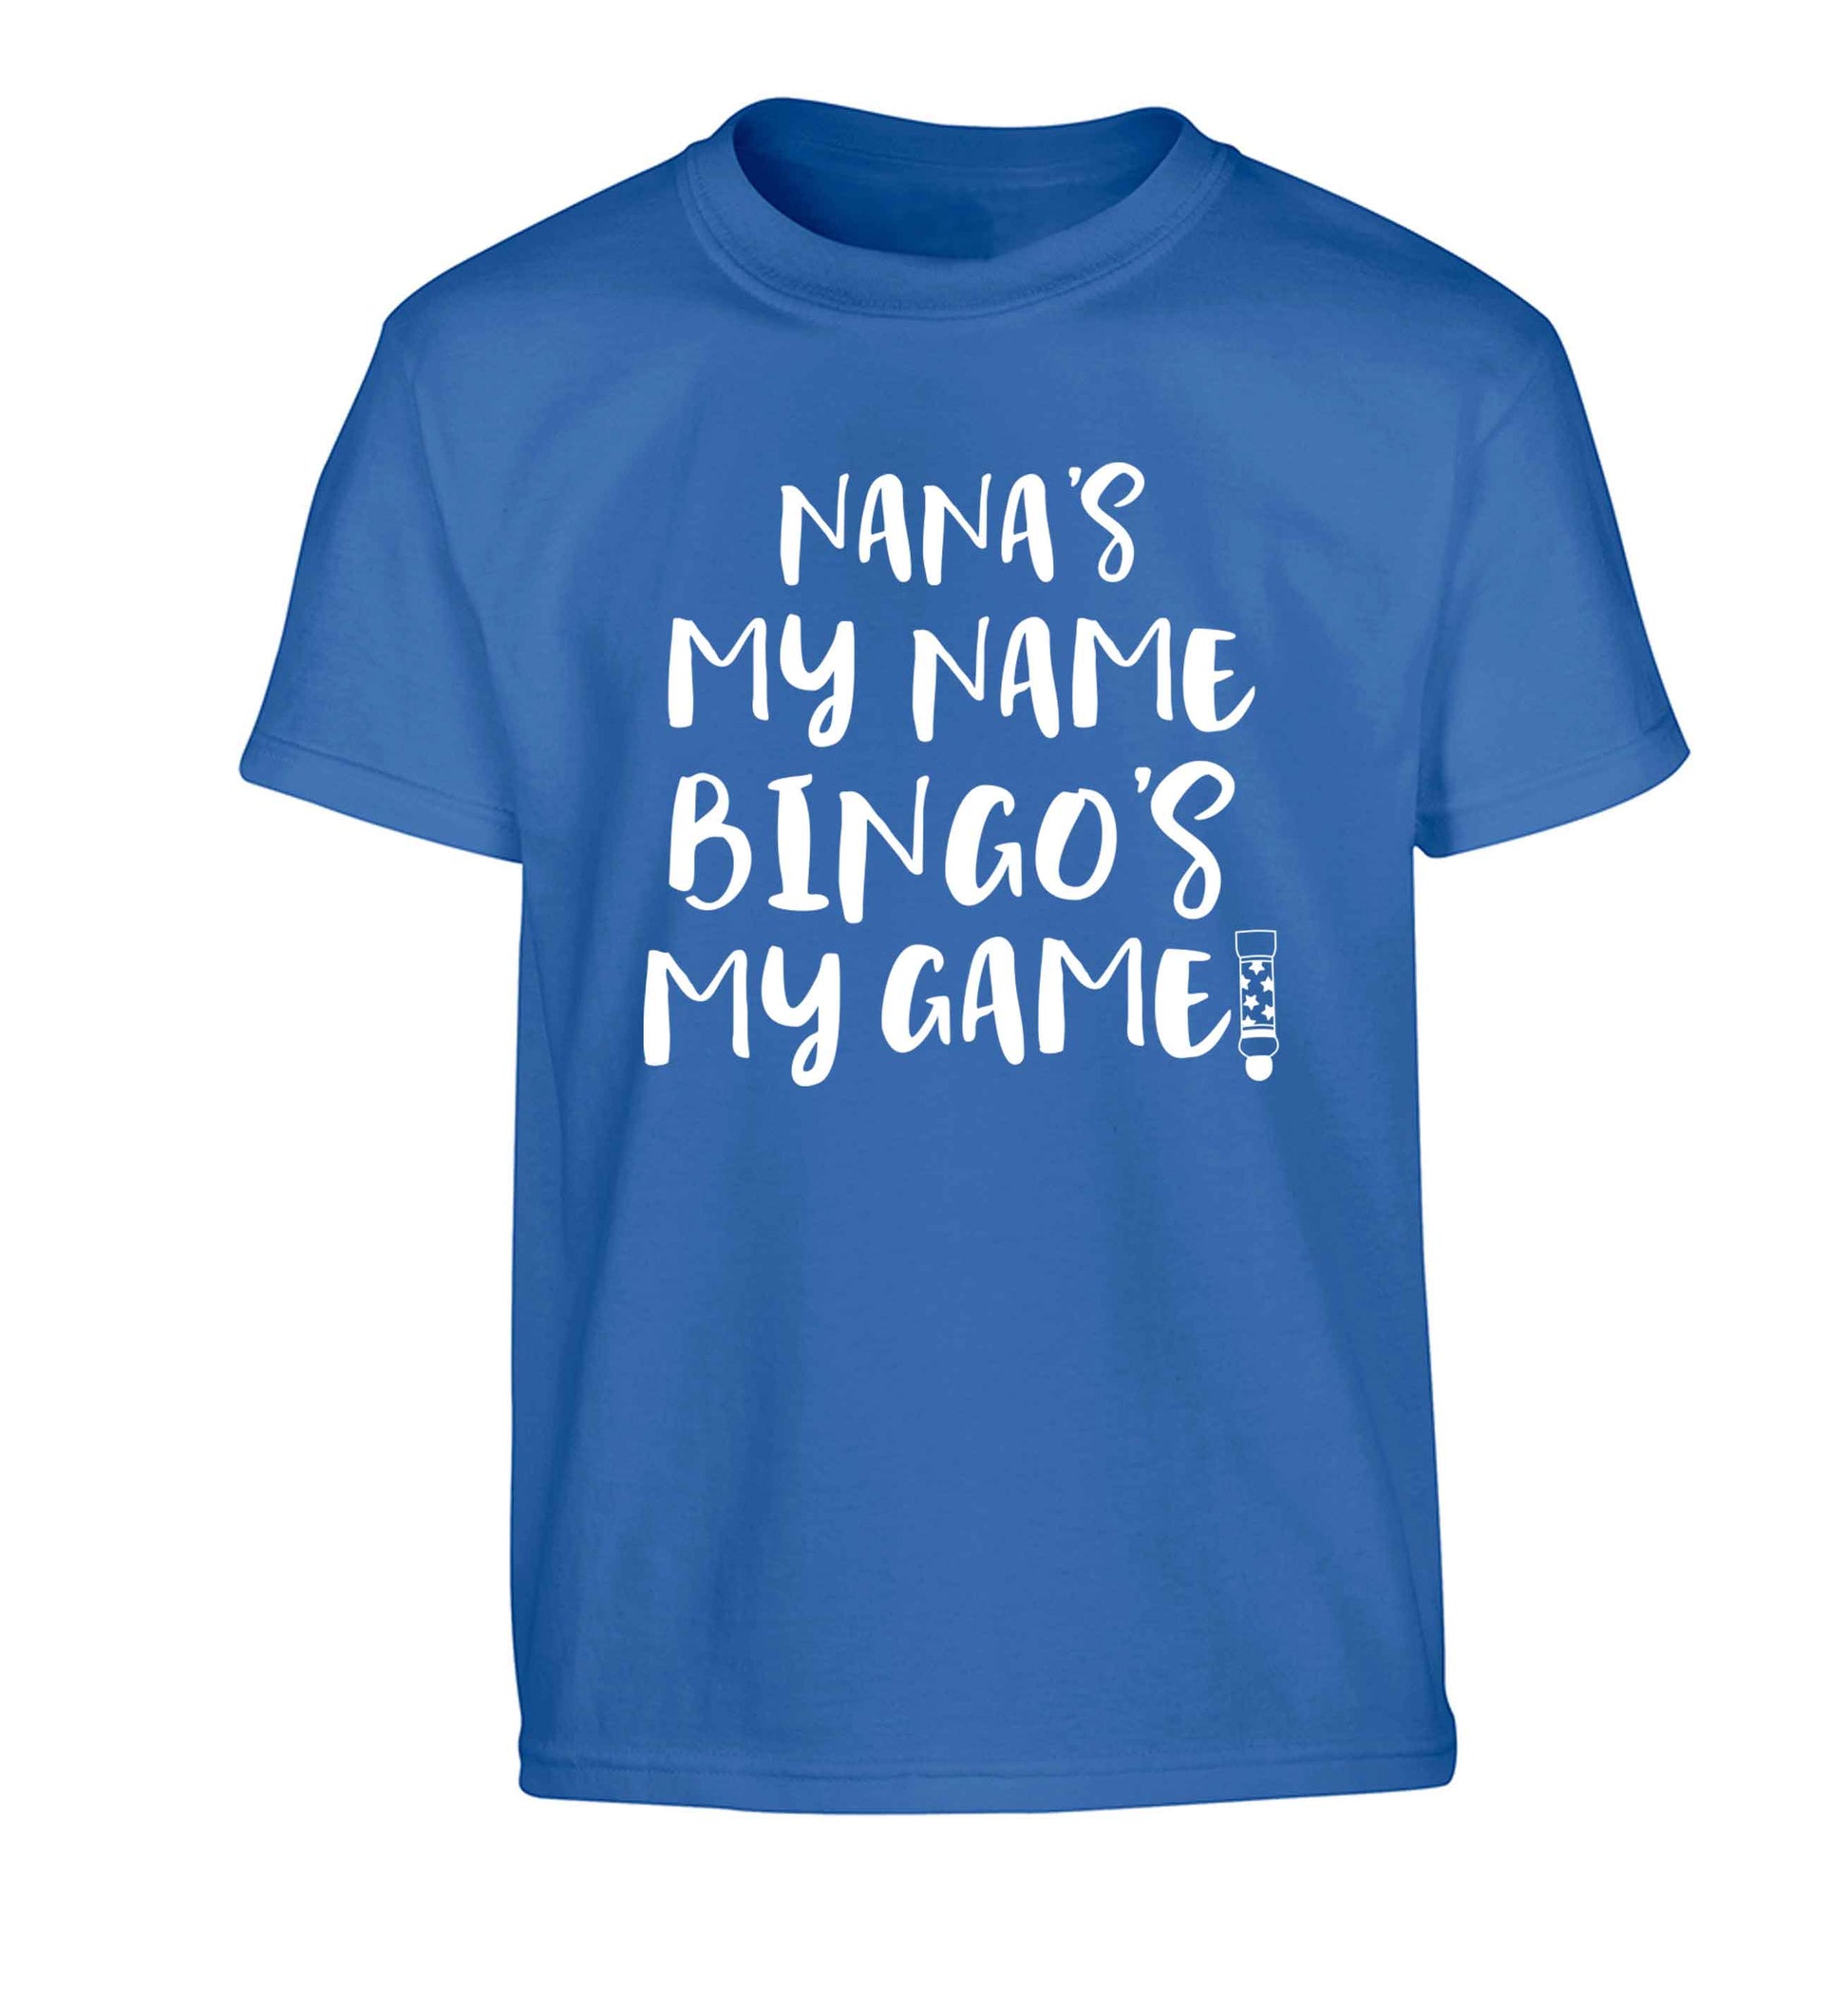 Nana's my name bingo's my game! Children's blue Tshirt 12-13 Years